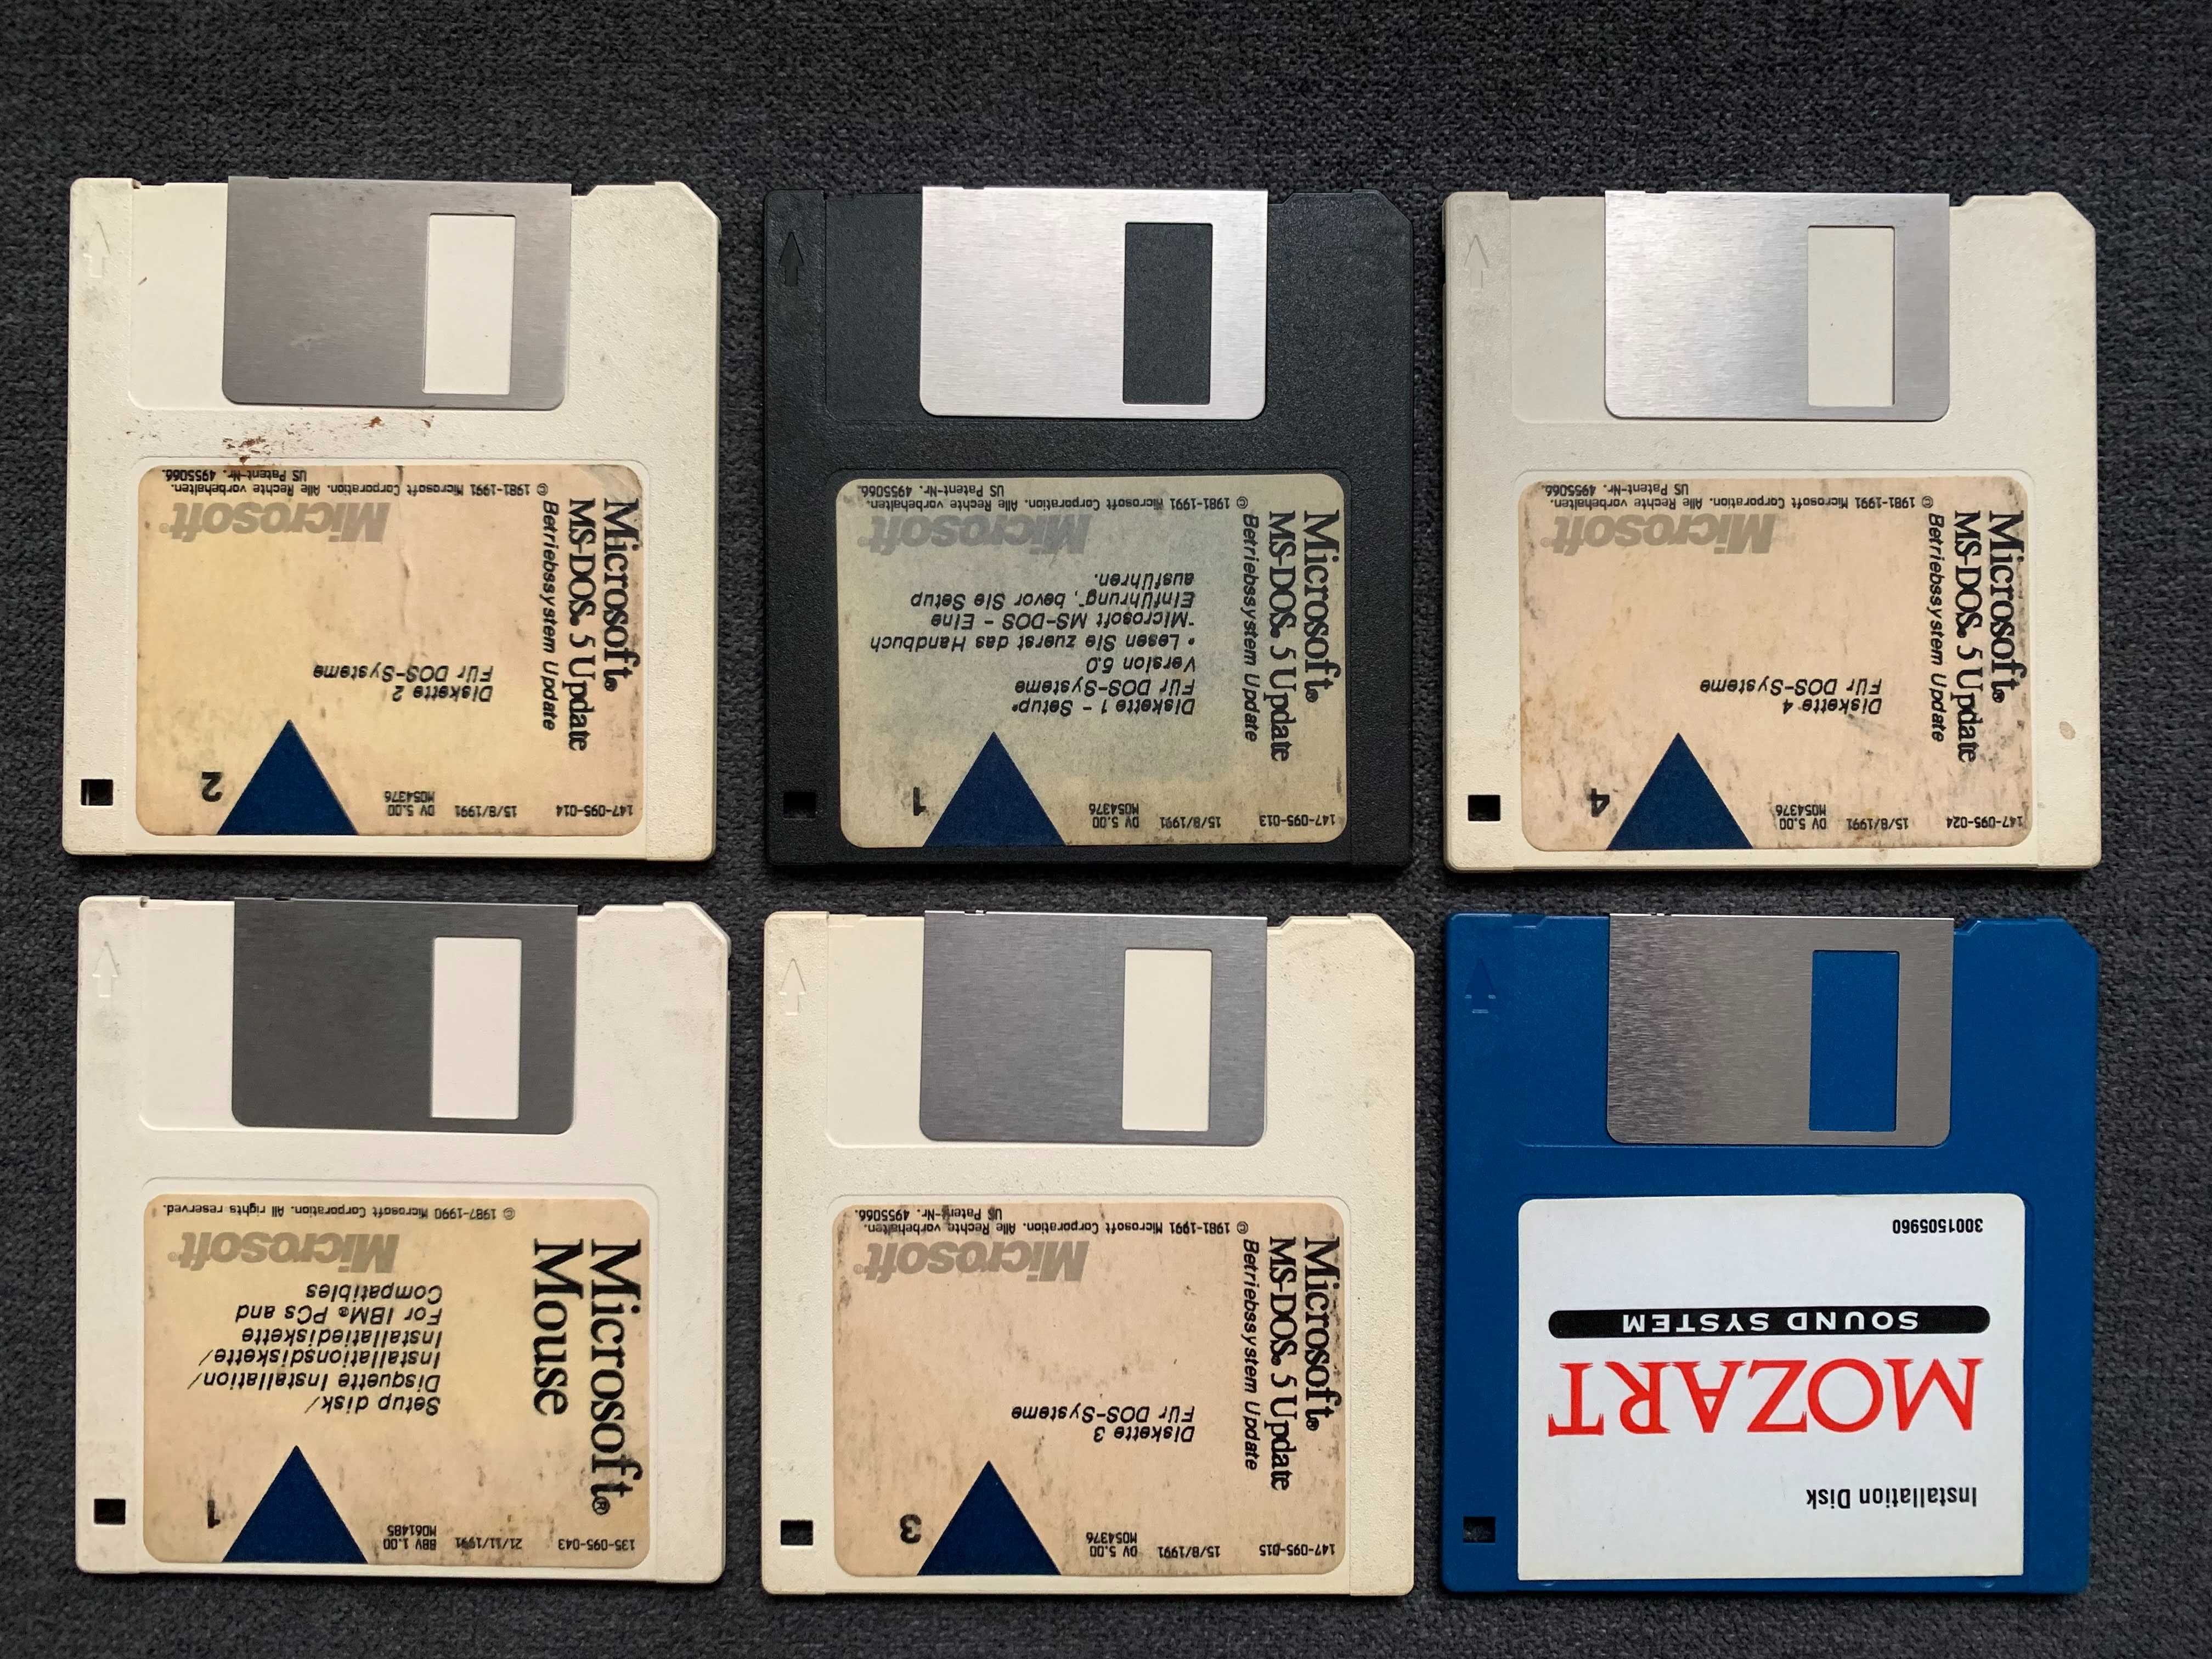 zabytkowe dyskietki komputerowe oryginalne 1991 rok update Micfosoft